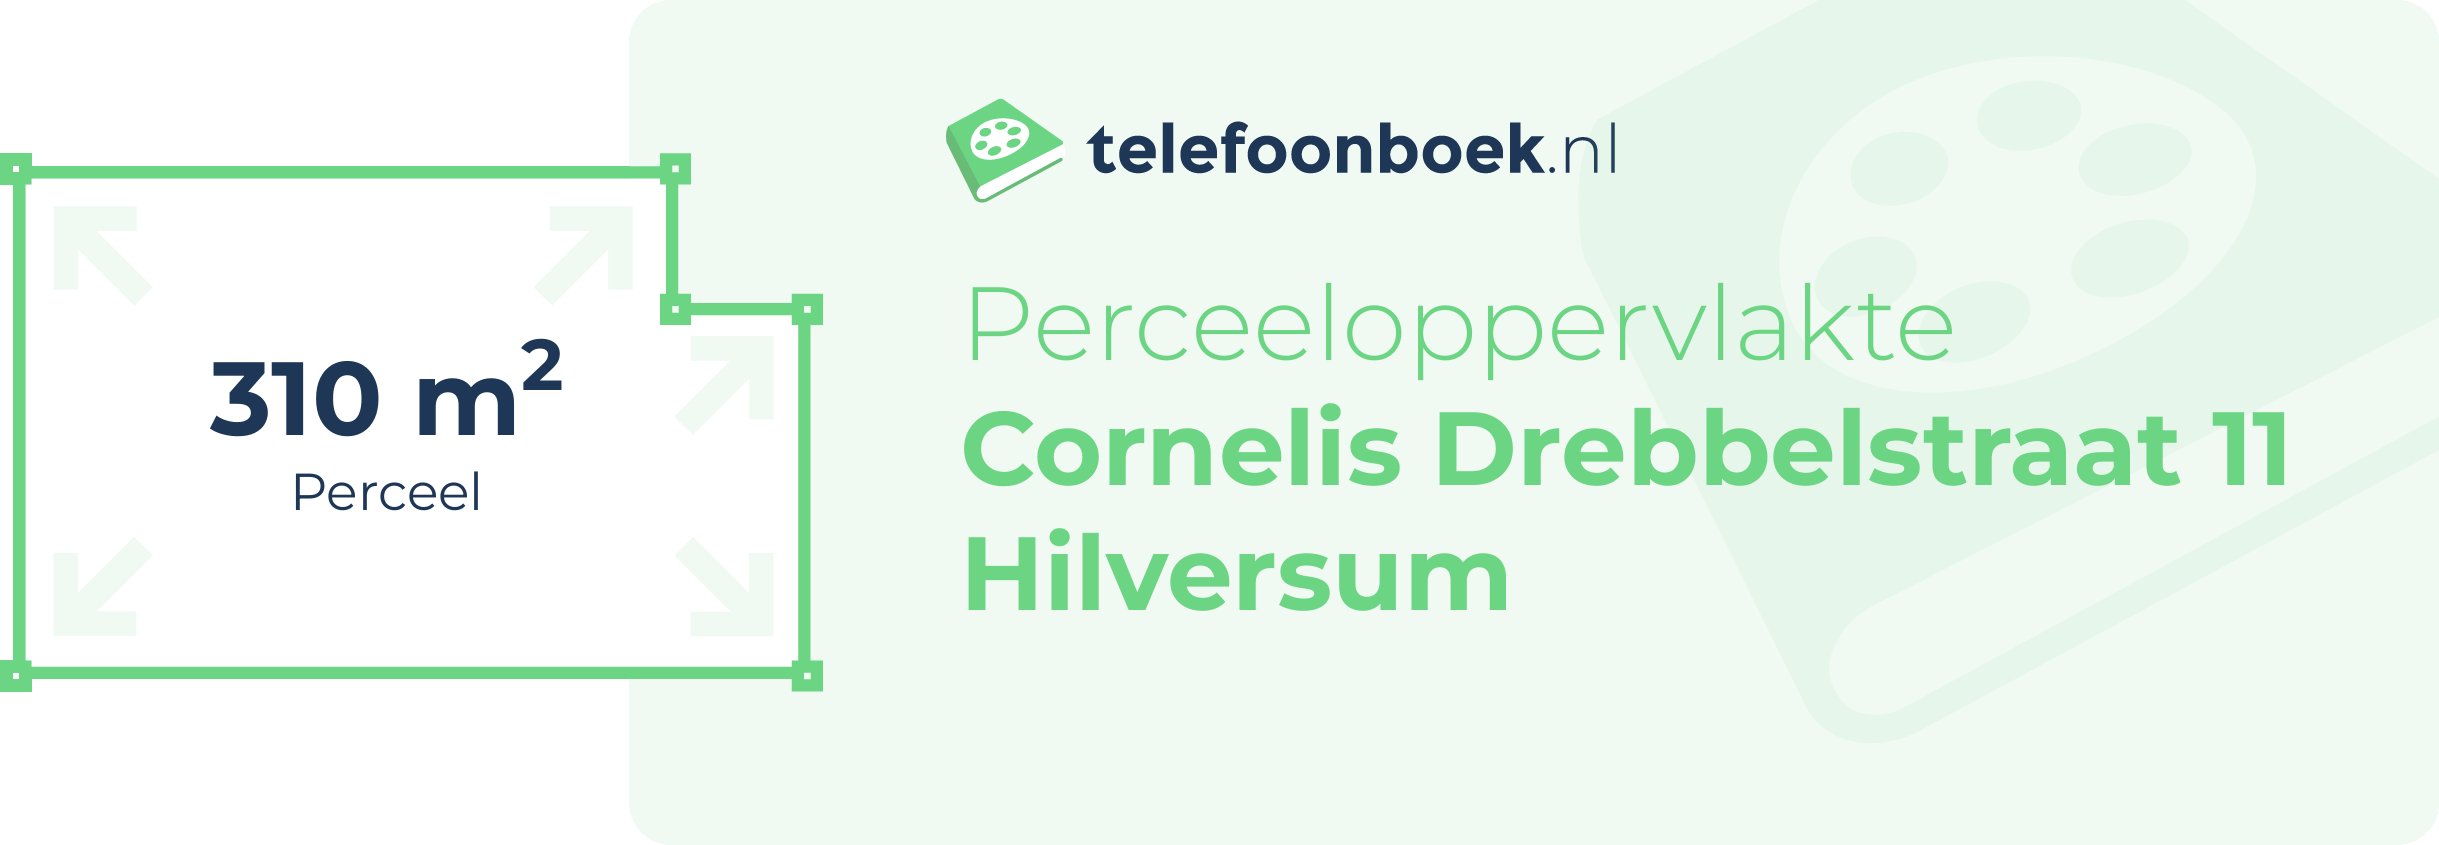 Perceeloppervlakte Cornelis Drebbelstraat 11 Hilversum